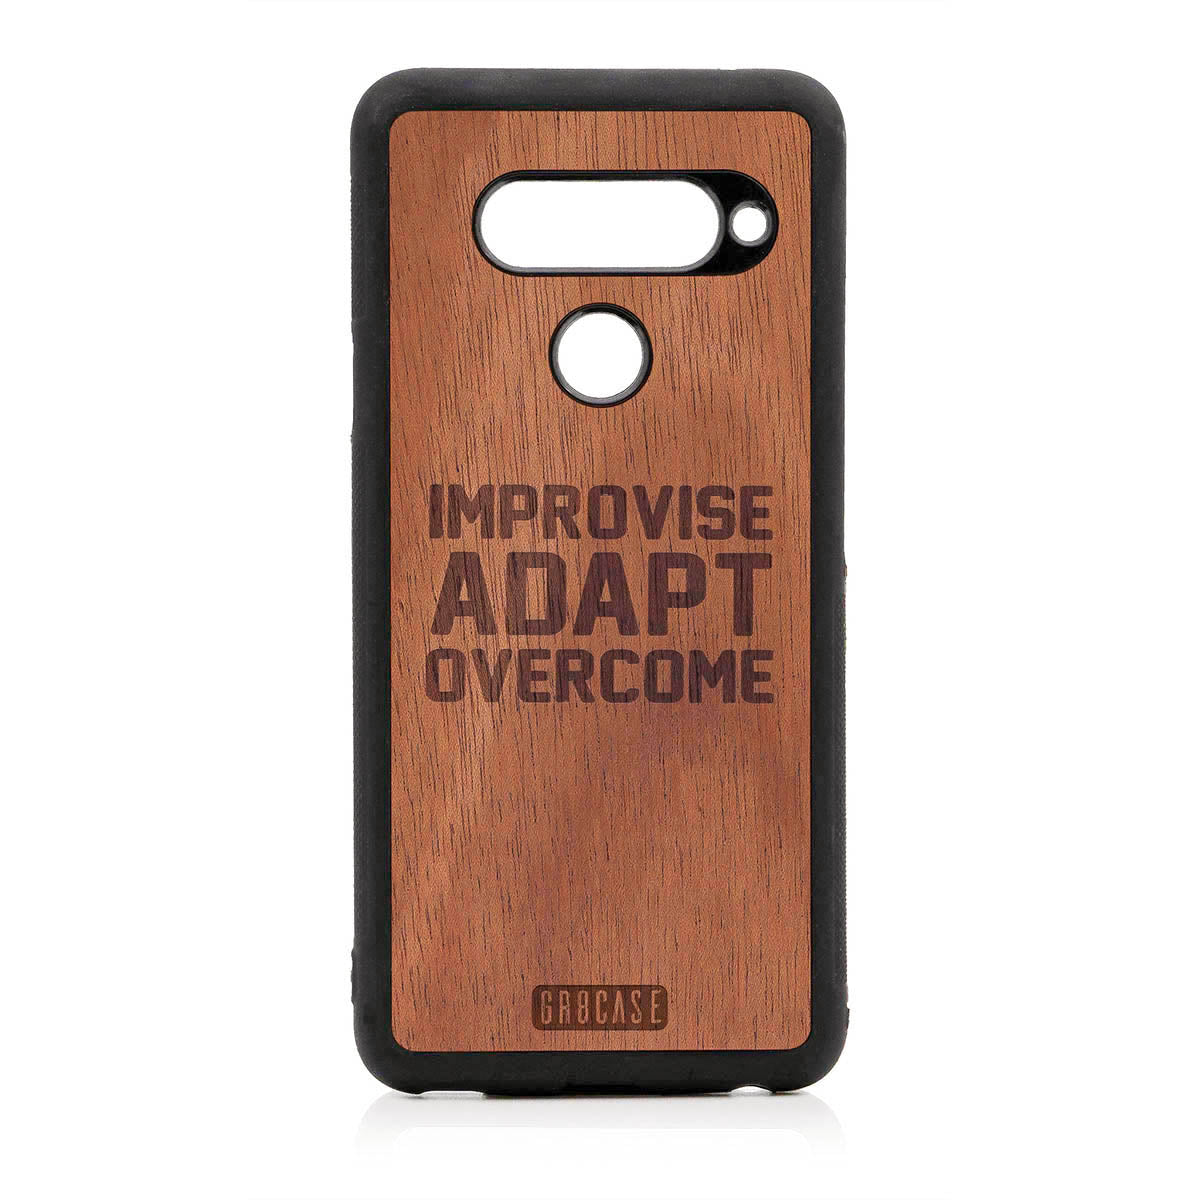 Improvise Adapt Overcome Design Wood Case For LG V40